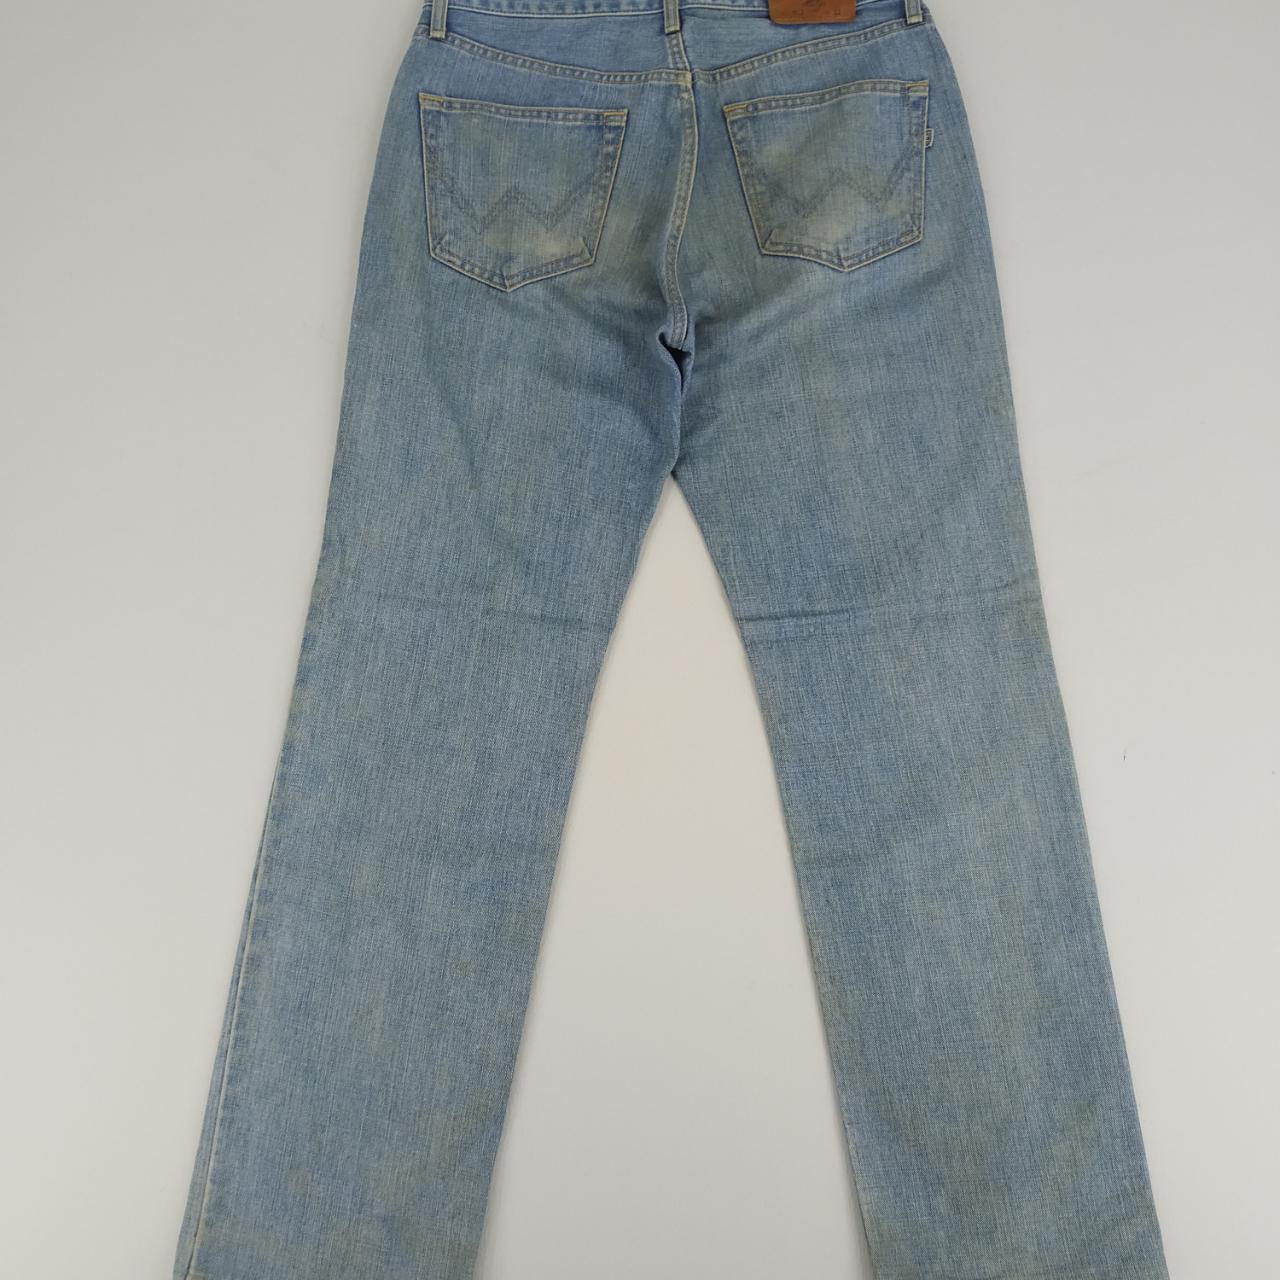 Vintage Edwin 403 Dirty Pattern Denim Jeans... - Depop